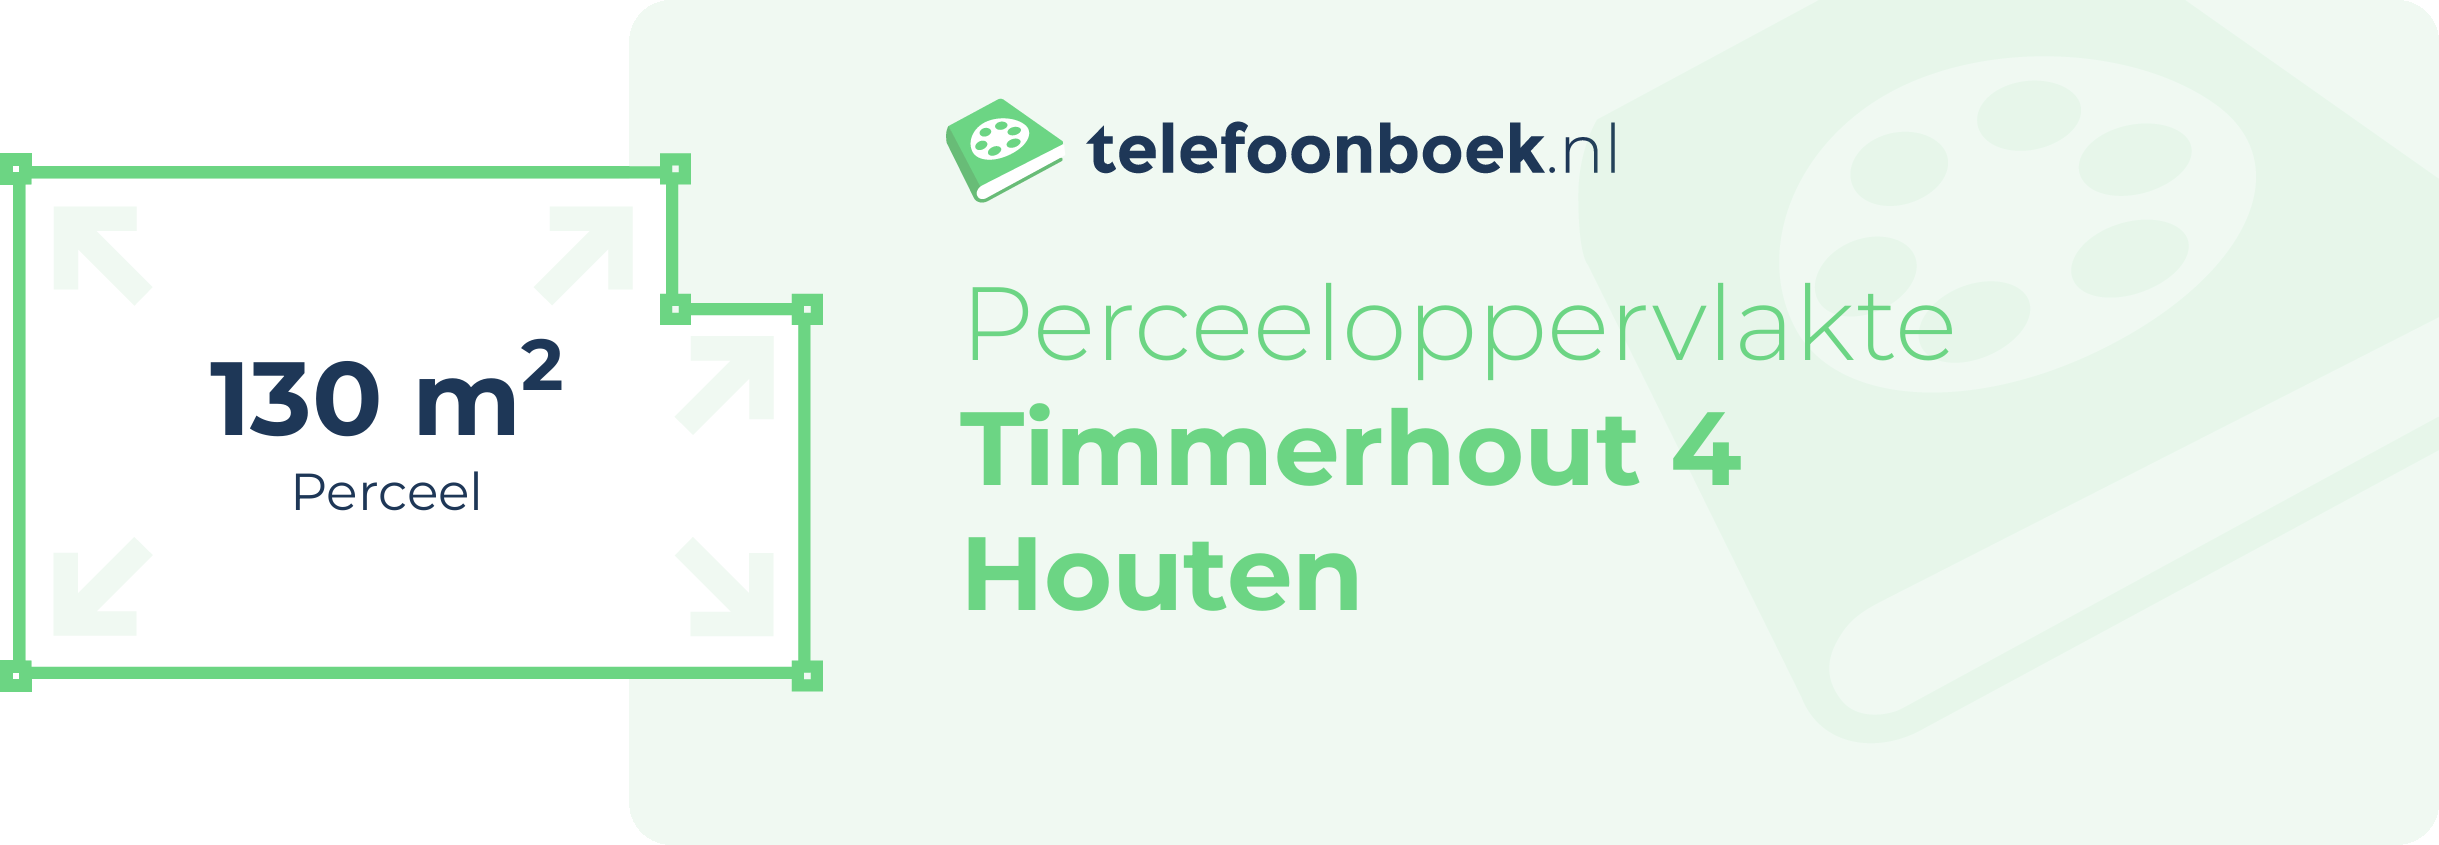 Perceeloppervlakte Timmerhout 4 Houten